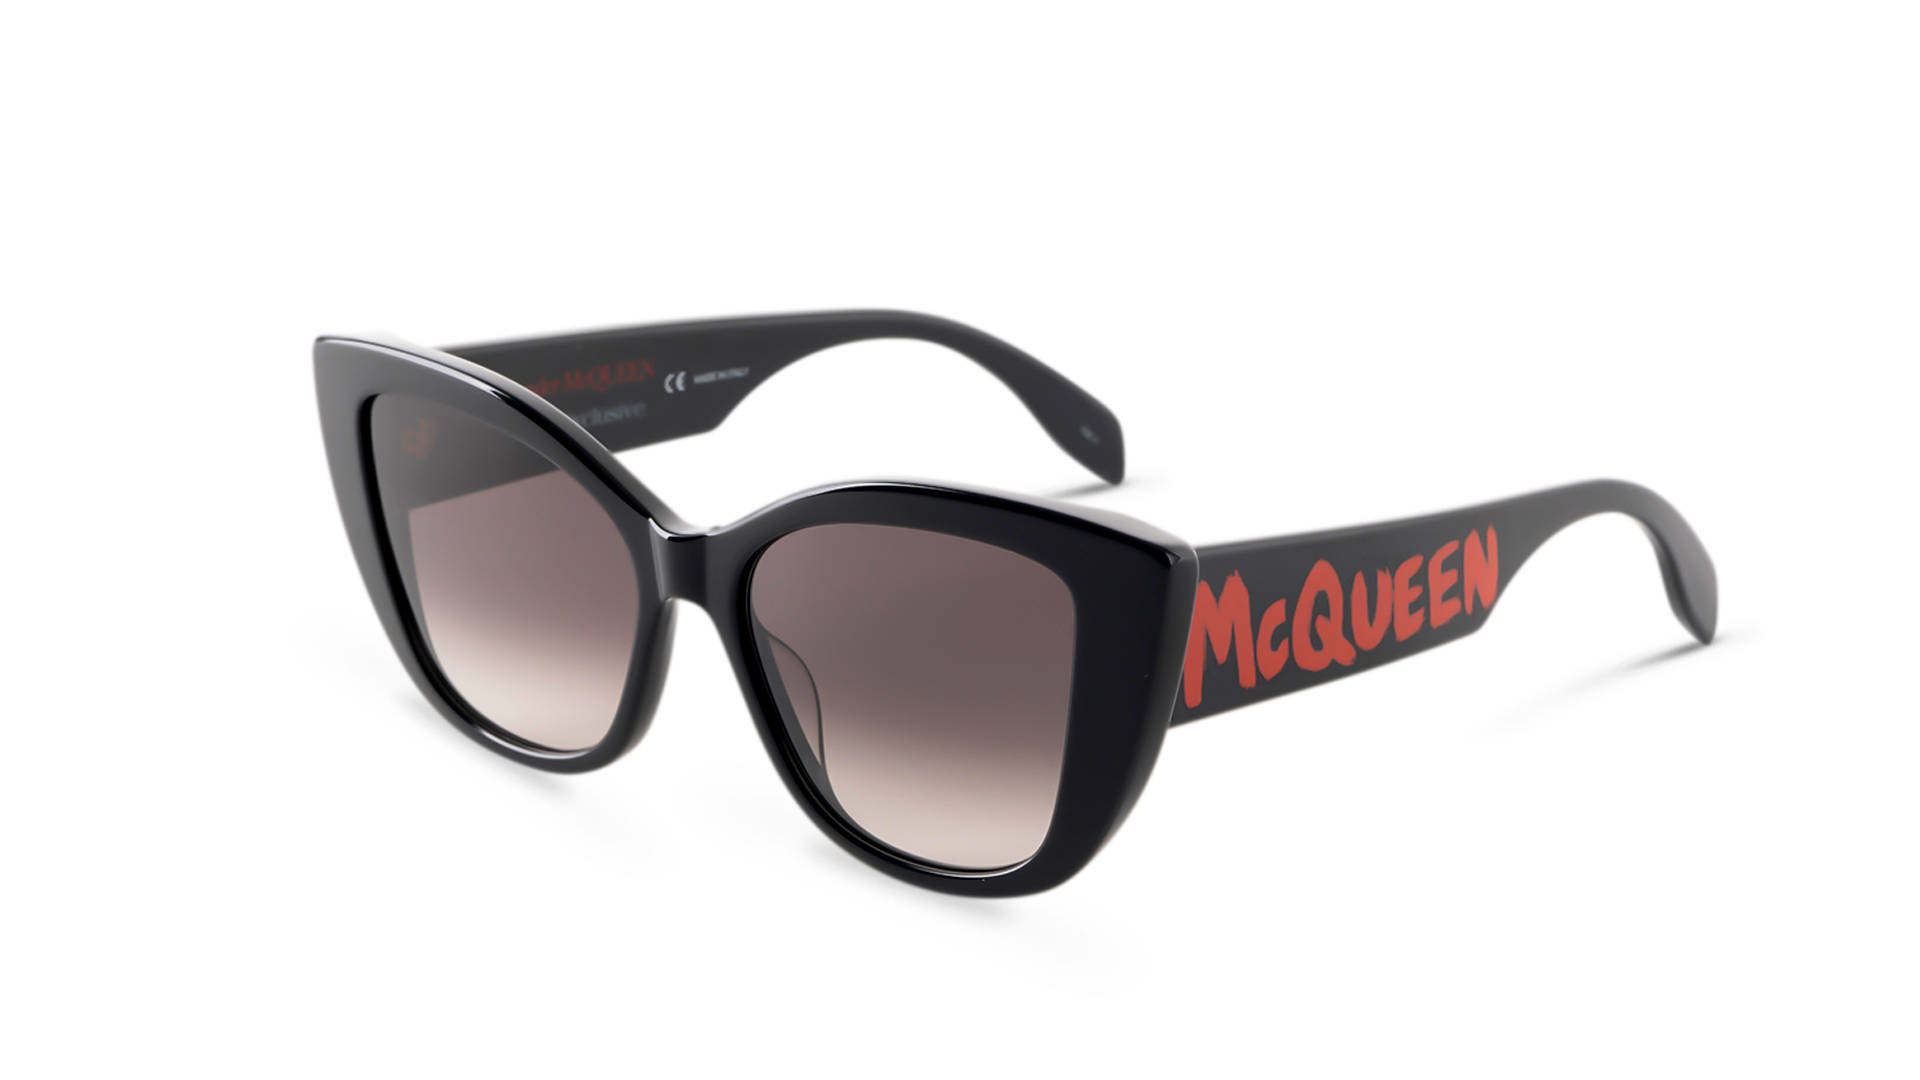 Alexander Mcqueen Black Bold Fashion Sunglasses Picture